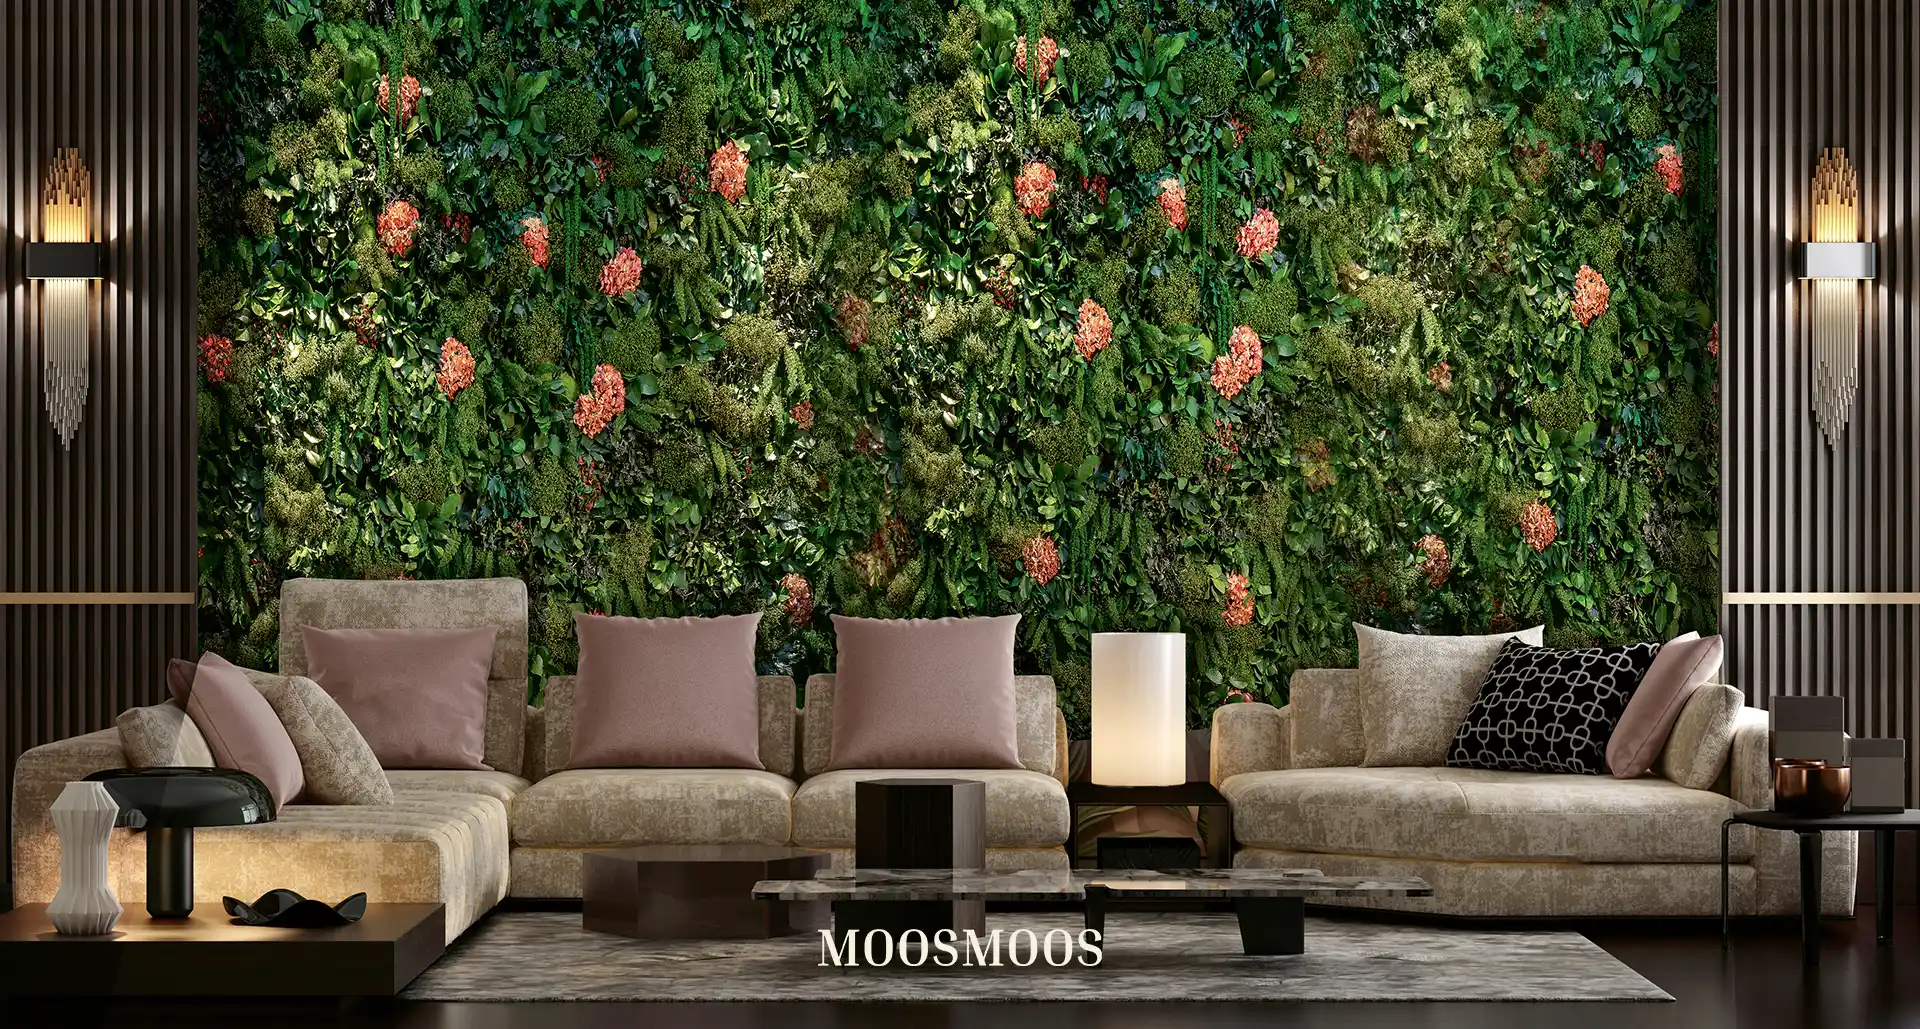 MOOSMOOS Blumenwand / Flowerwall mit echten Blumen, Pflanzen und Moosen im Schlafzimmer